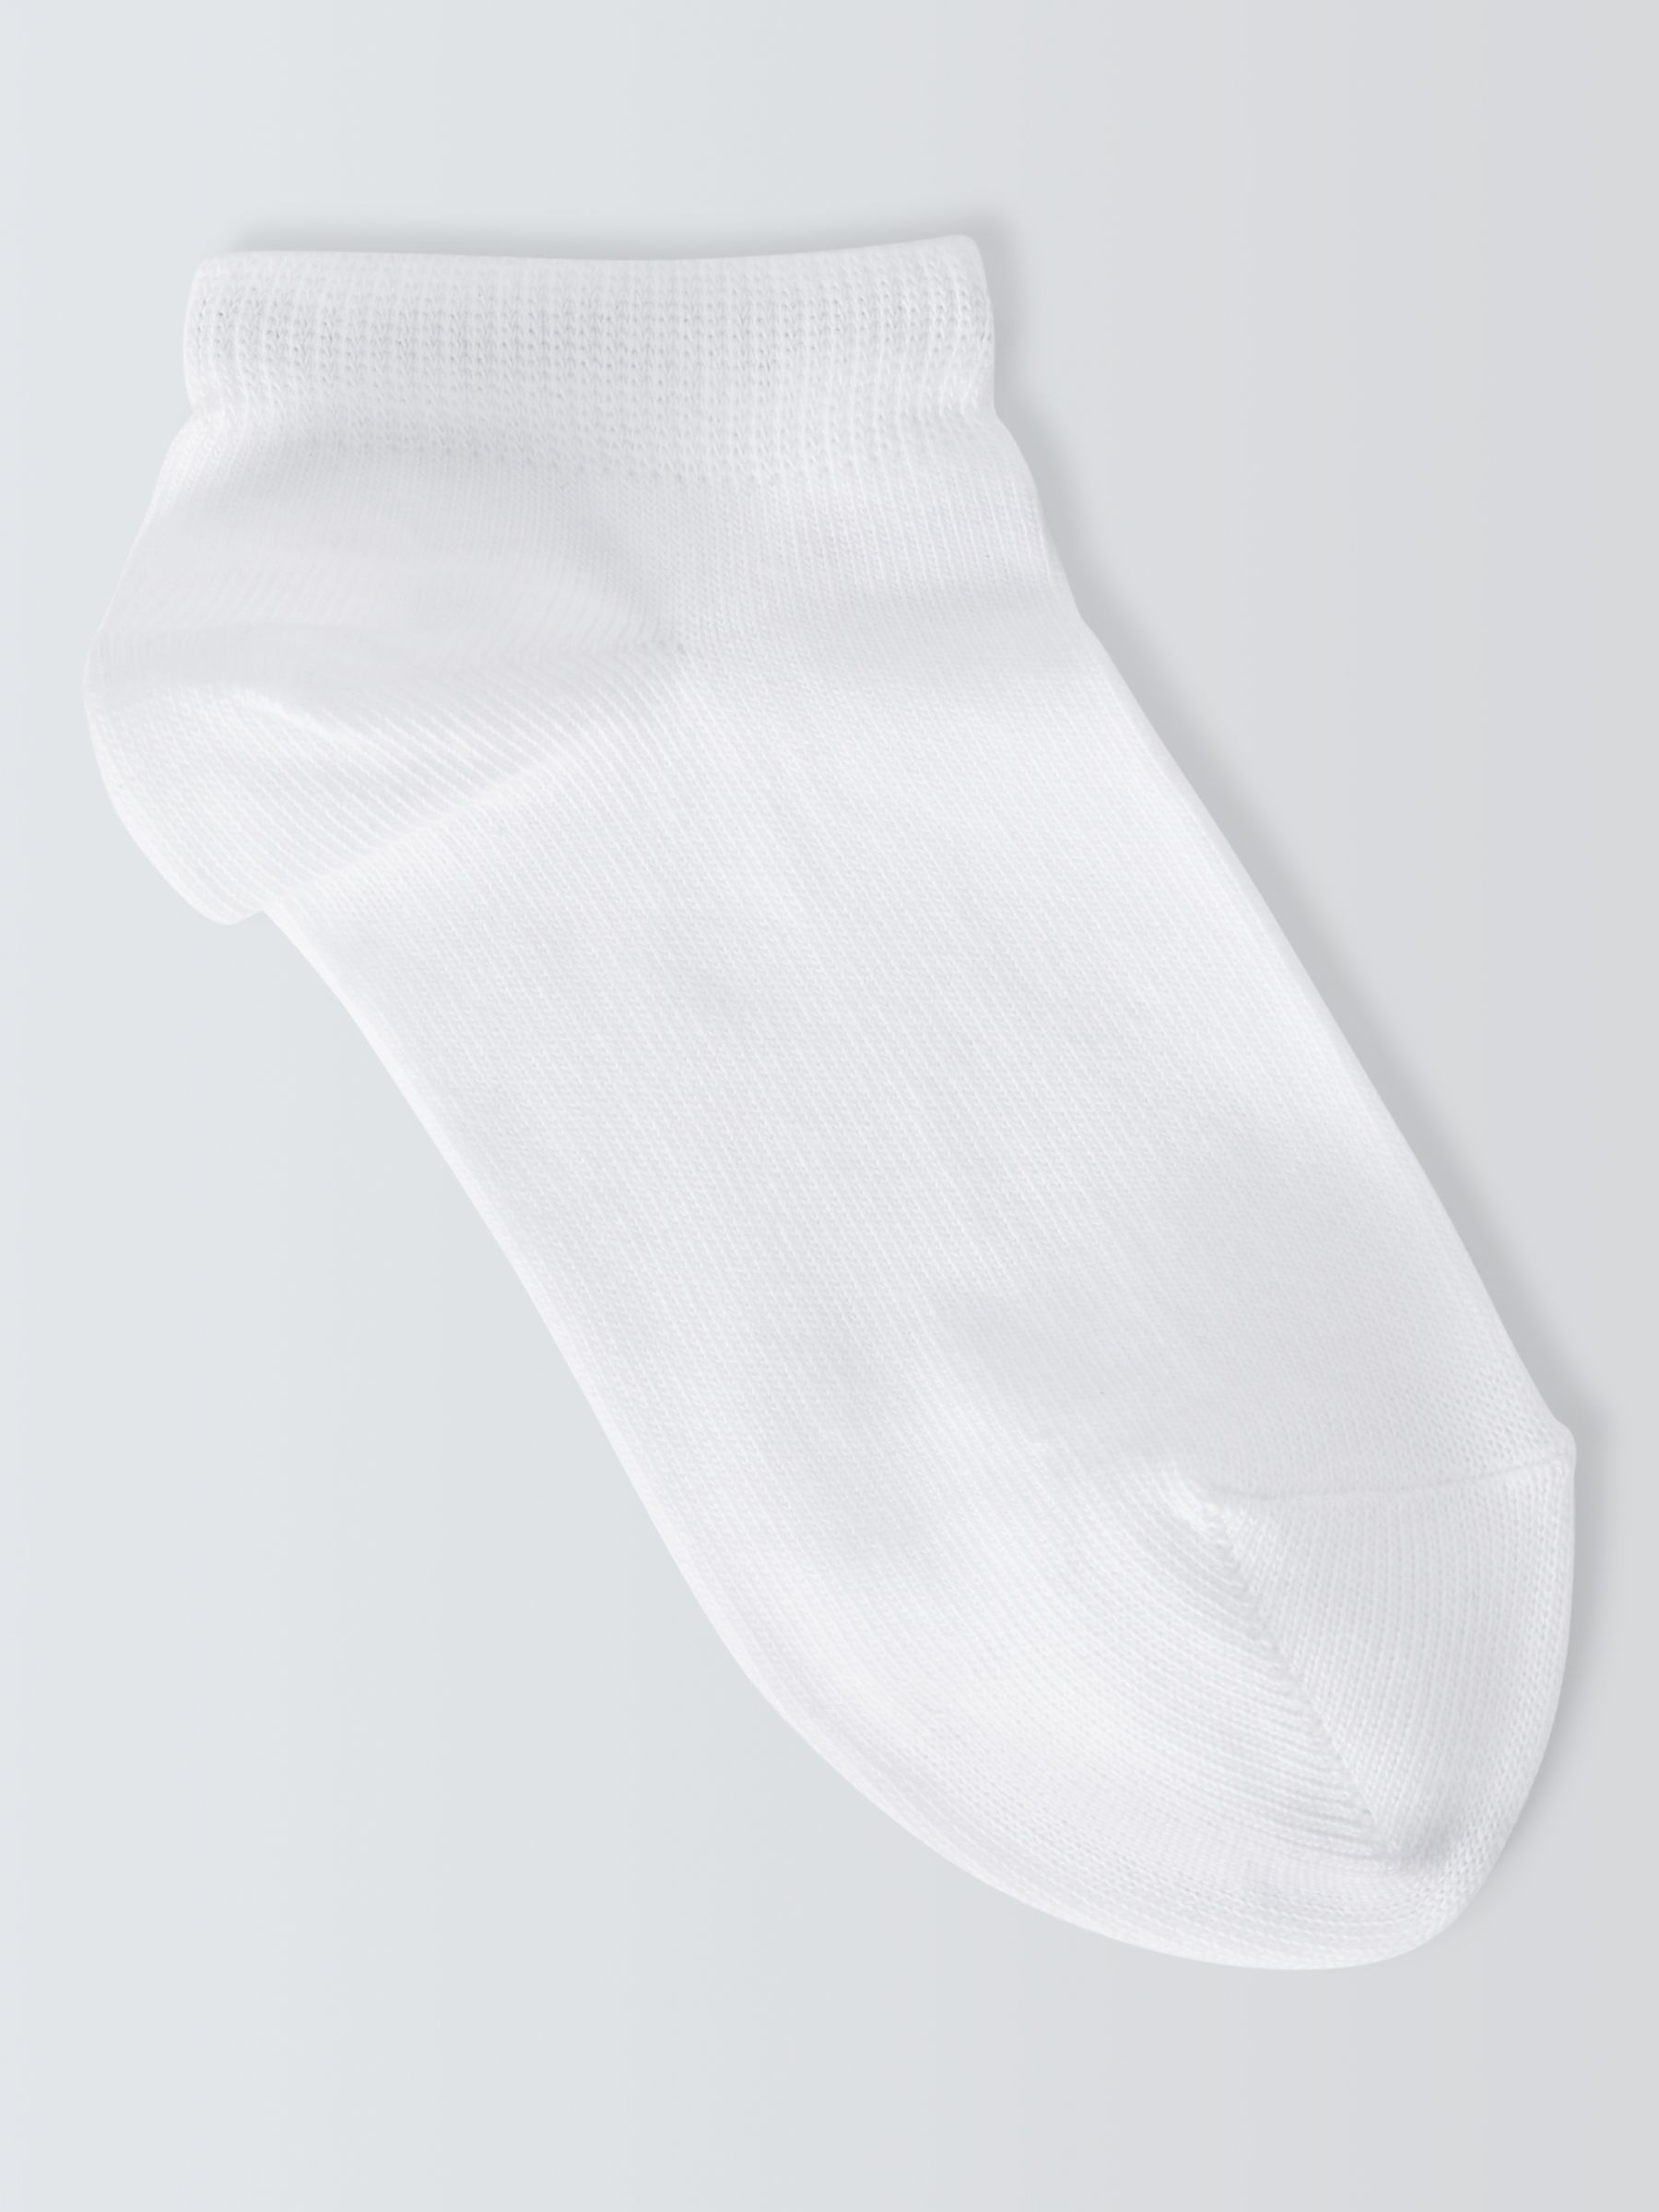 John Lewis ANYDAY Kids' Trainer Liner Socks, Pack of 7, White, 4-7